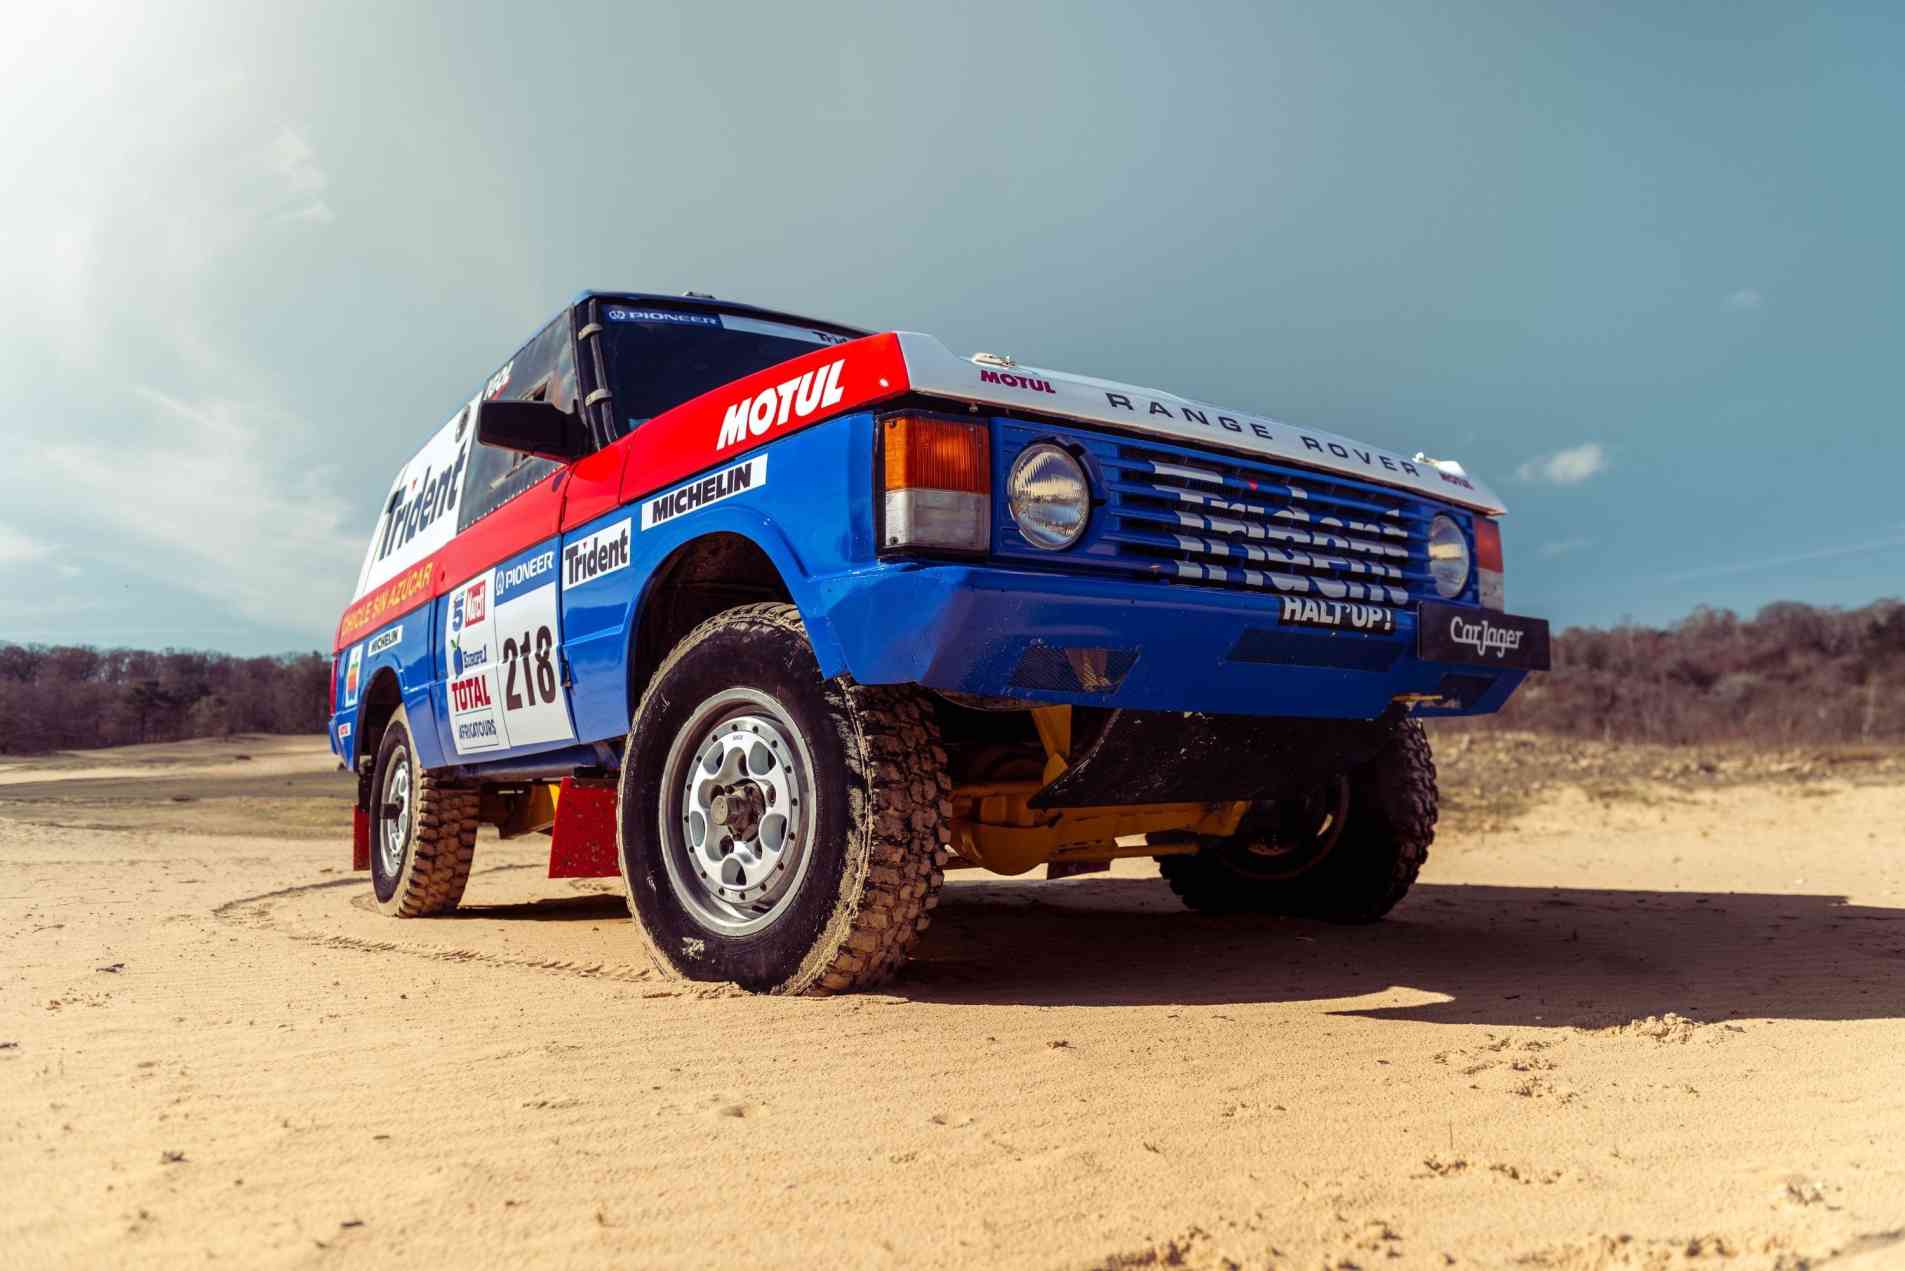 LAND ROVER Range rover "halt' up!" Dakar 1990